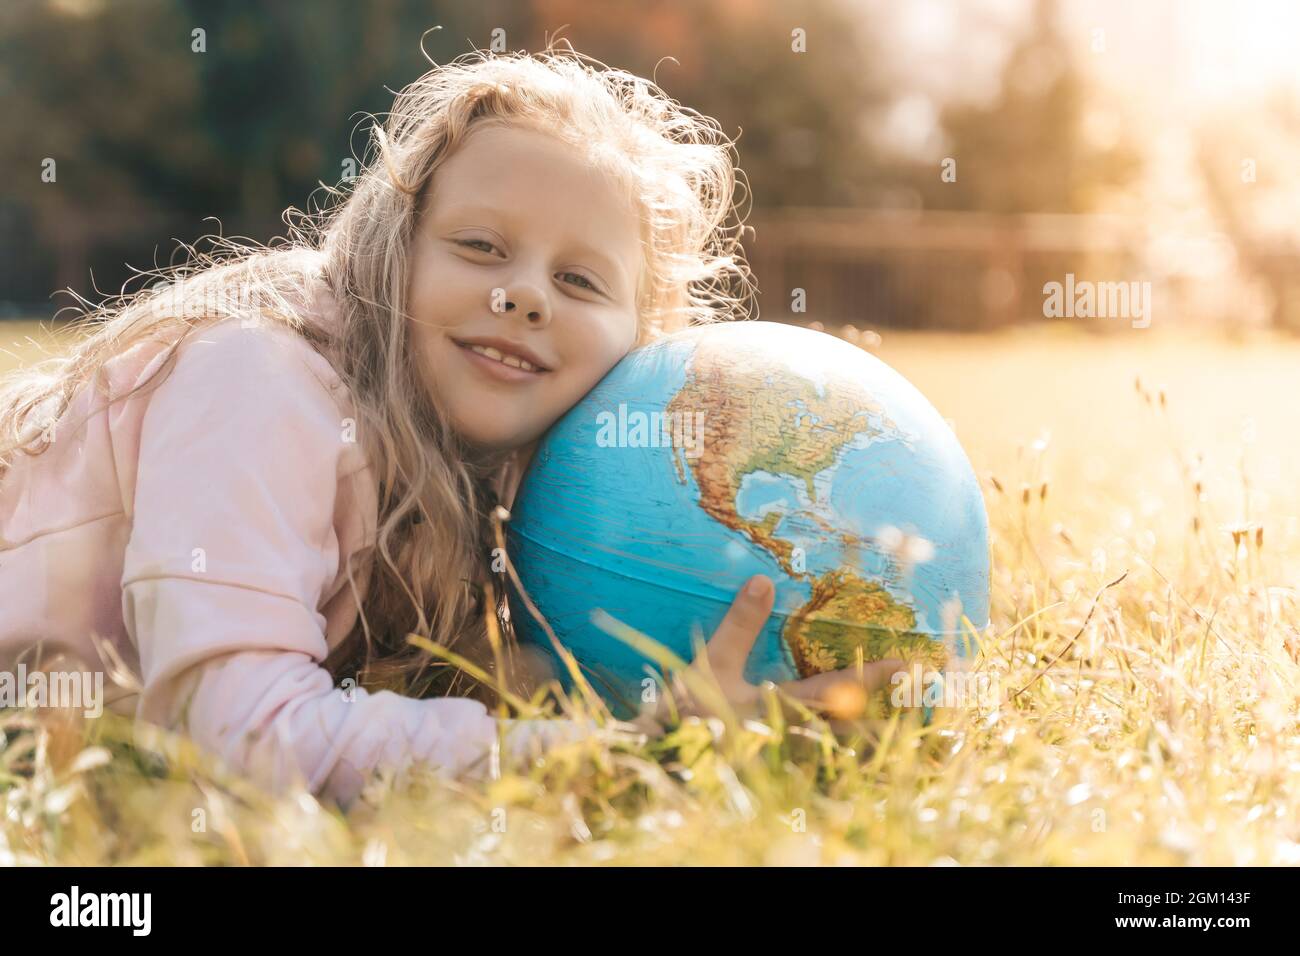 Kind mit Erdkugel. Porträt eines blonden europäischen Mädchens der Grundschule mit einem pädagogischen Globus des Planeten Erde in der Natur bei sonnigem Wetter. Konzept für Studium, Bildung, Naturschutz und Umweltschutz. Hochwertige Fotos Stockfoto